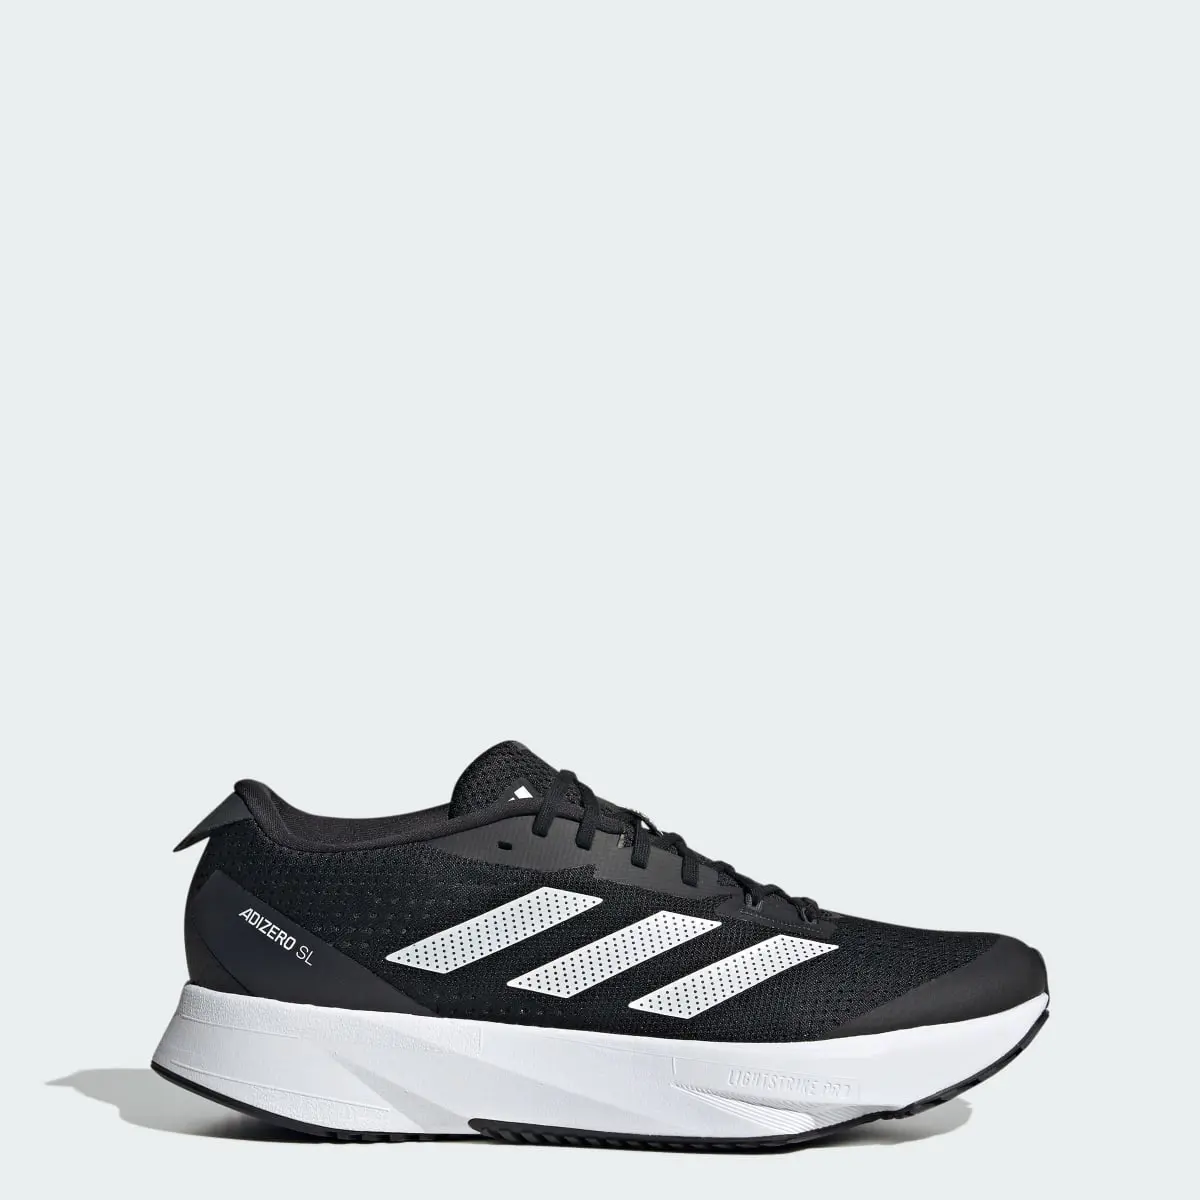 Adidas Adizero SL Running Shoes. 1